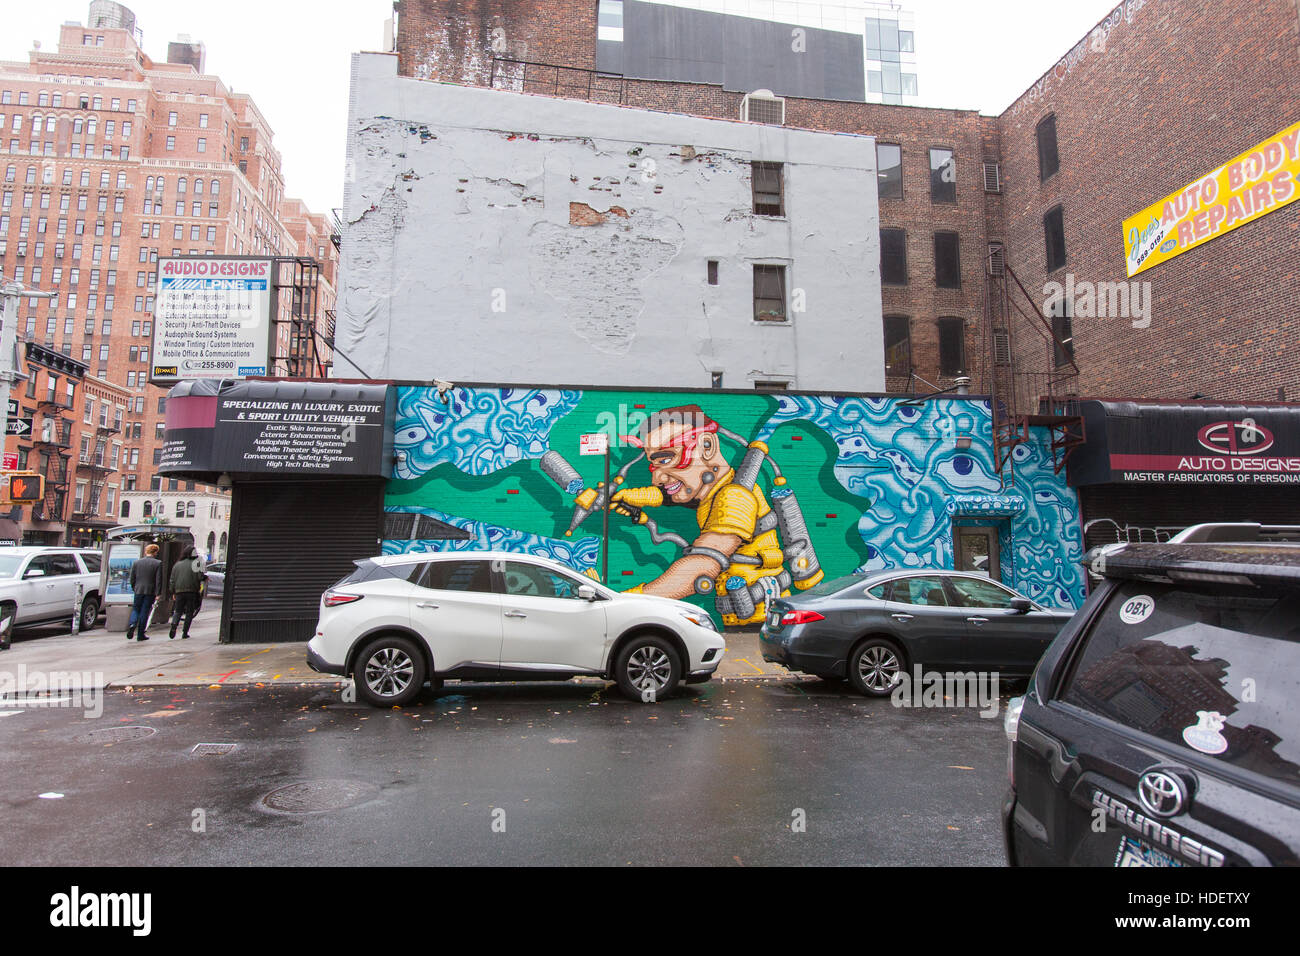 Auto sprühen Wandbild auf eine Garage in Chelsea, New York City, Vereinigte Staaten von Amerika. Stockfoto